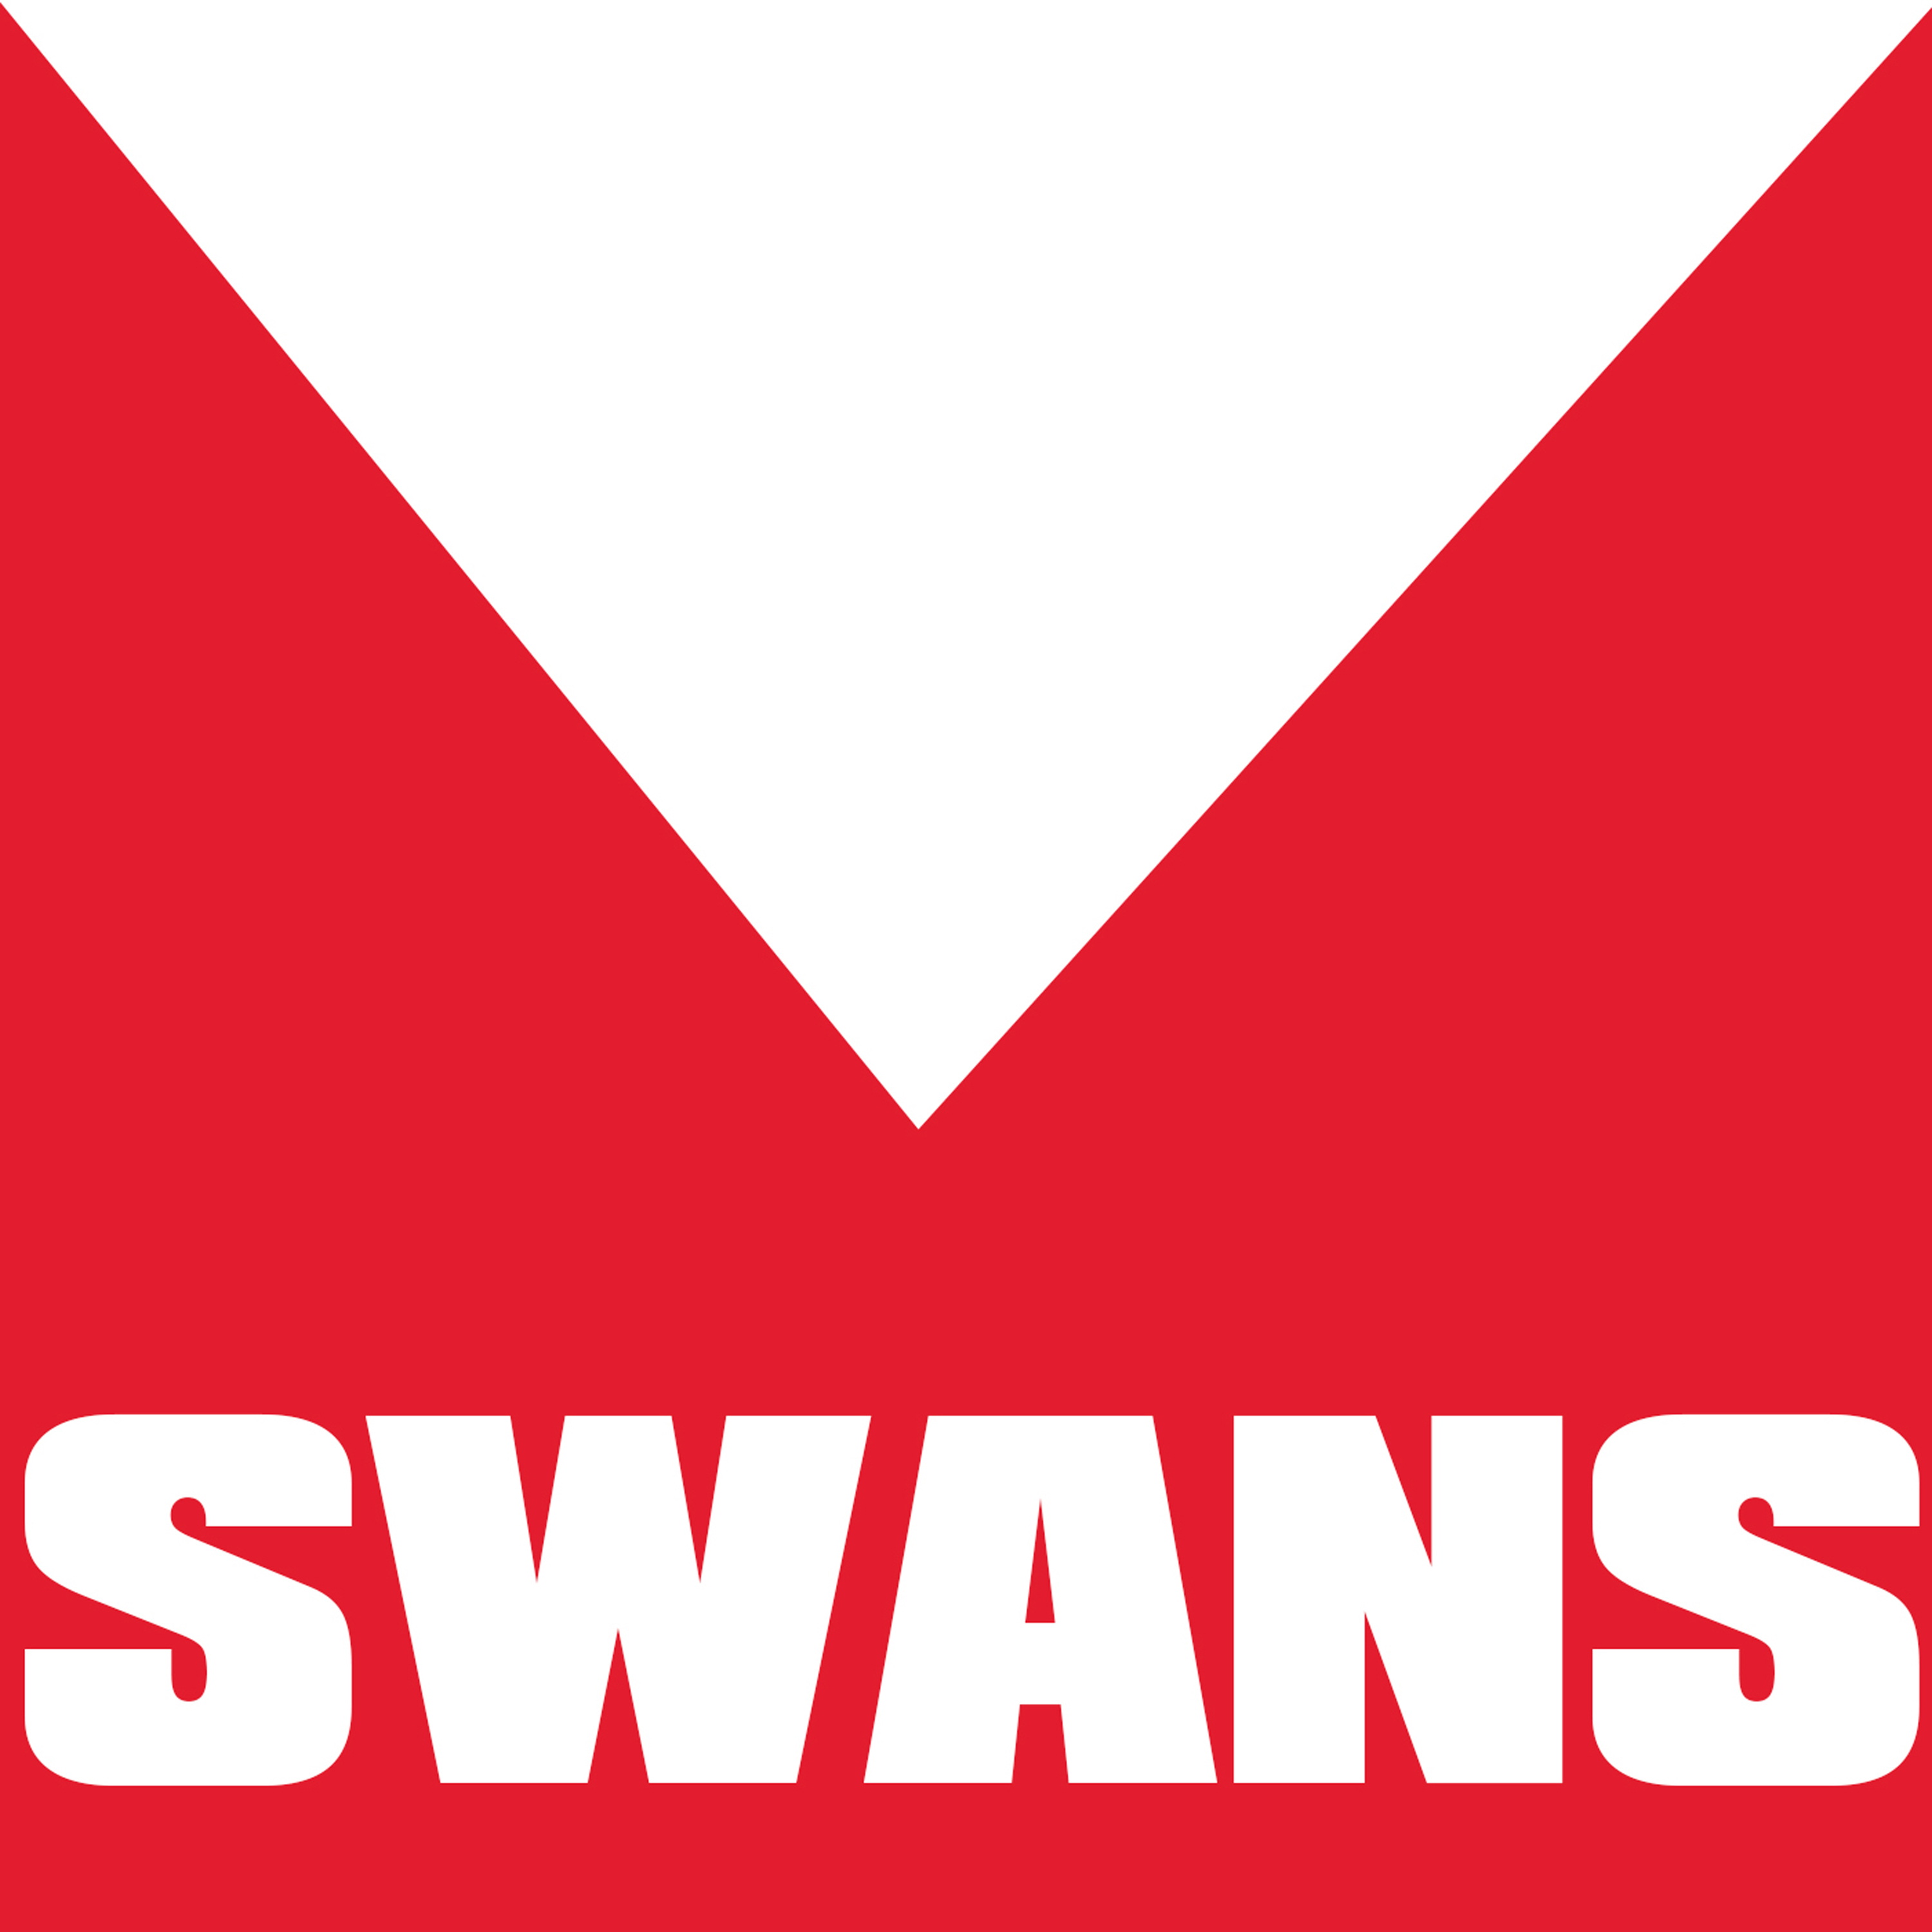 Sydney Swans Football Club